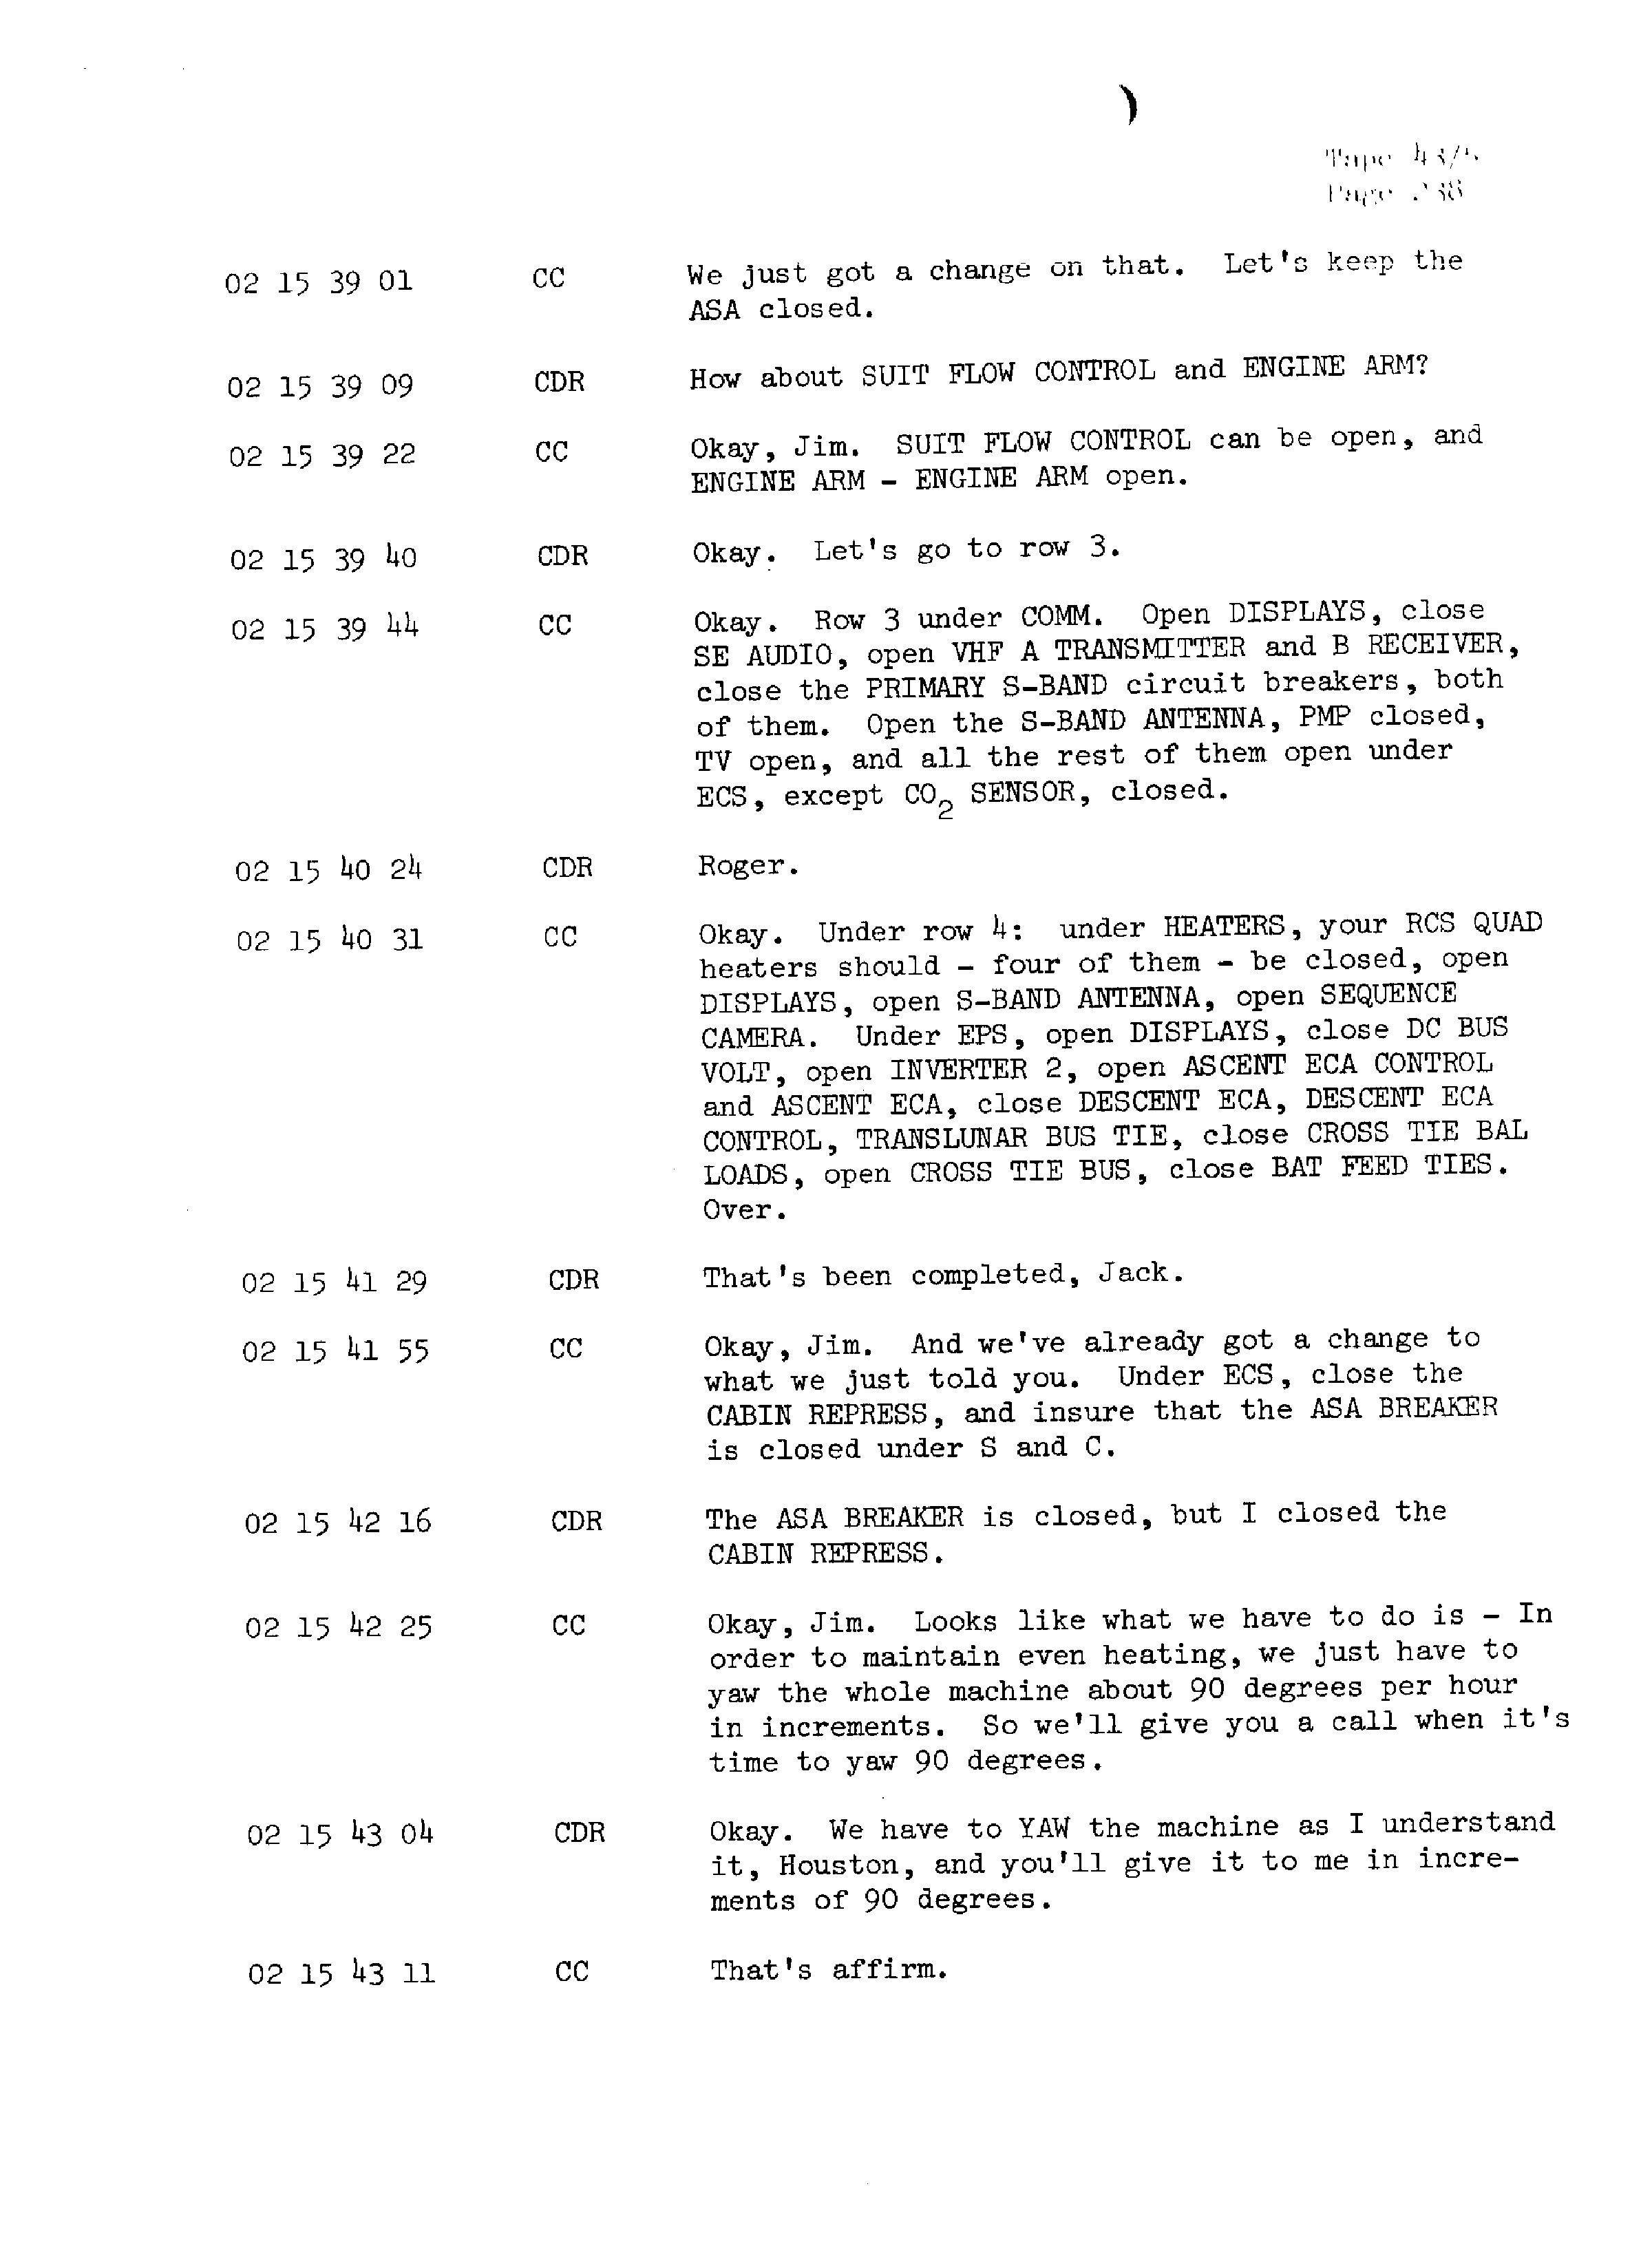 Page 245 of Apollo 13’s original transcript